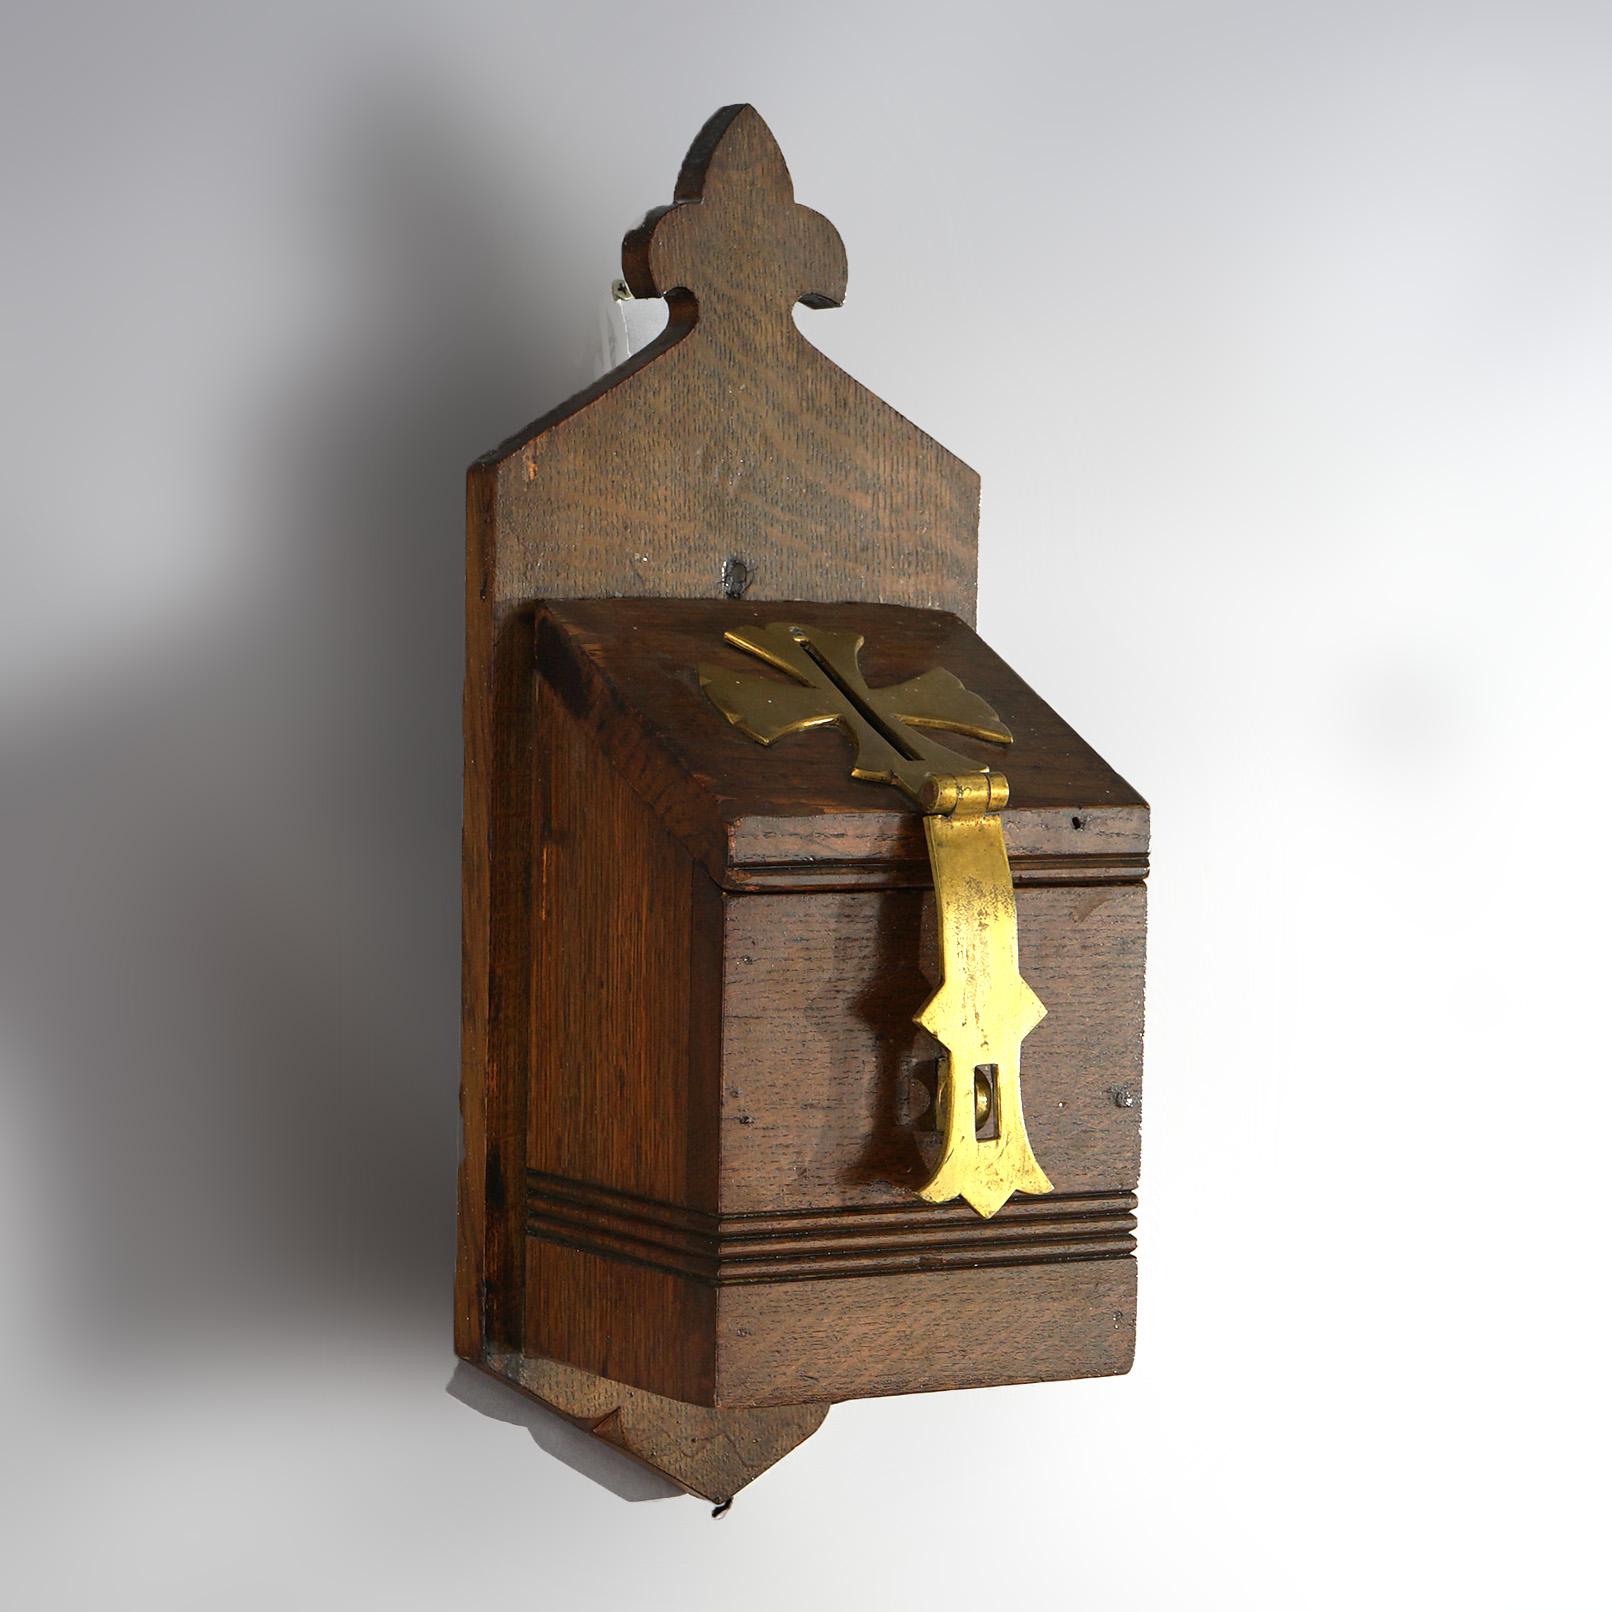 Antique Gothic Revival Quarter Sawn Oak Drop Box with Brass Trim and Fleur de Lis Crest, 19thC

Measures - 18.75